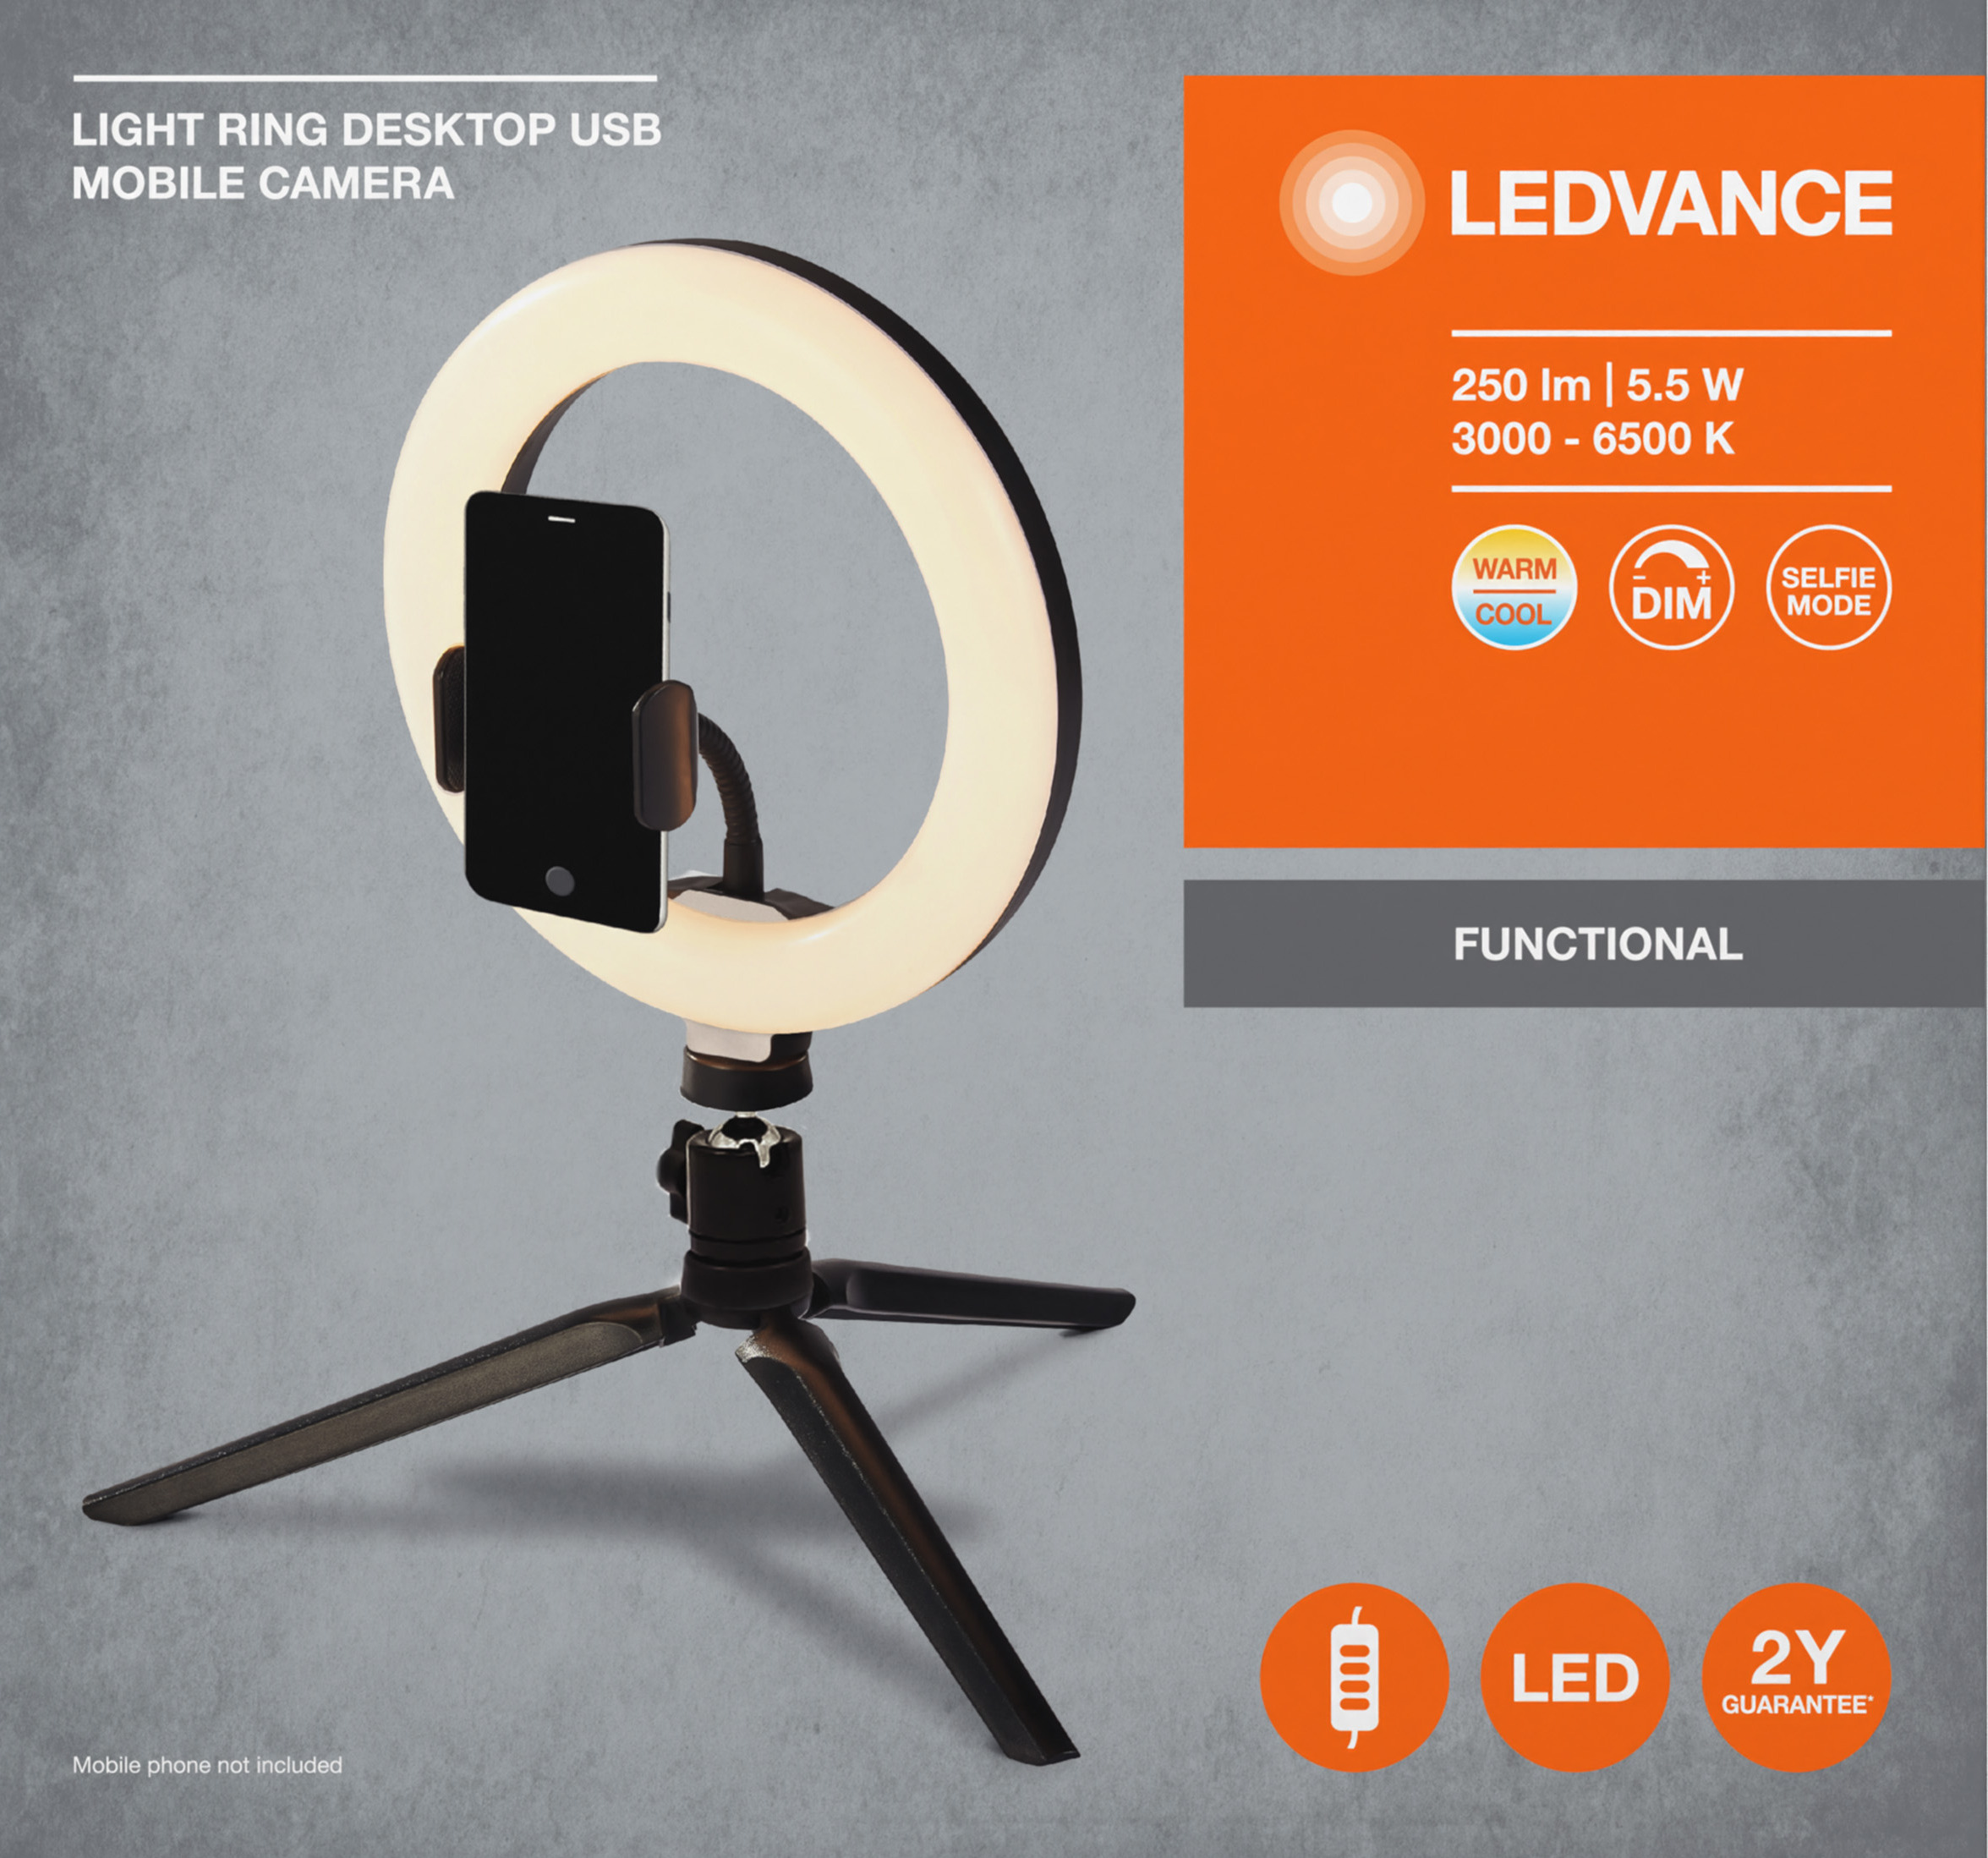 Светильник кольцевой Ledvance Mobile Camera Light Ring Desktop Usb (4058075666870) инструкция - изображение 6